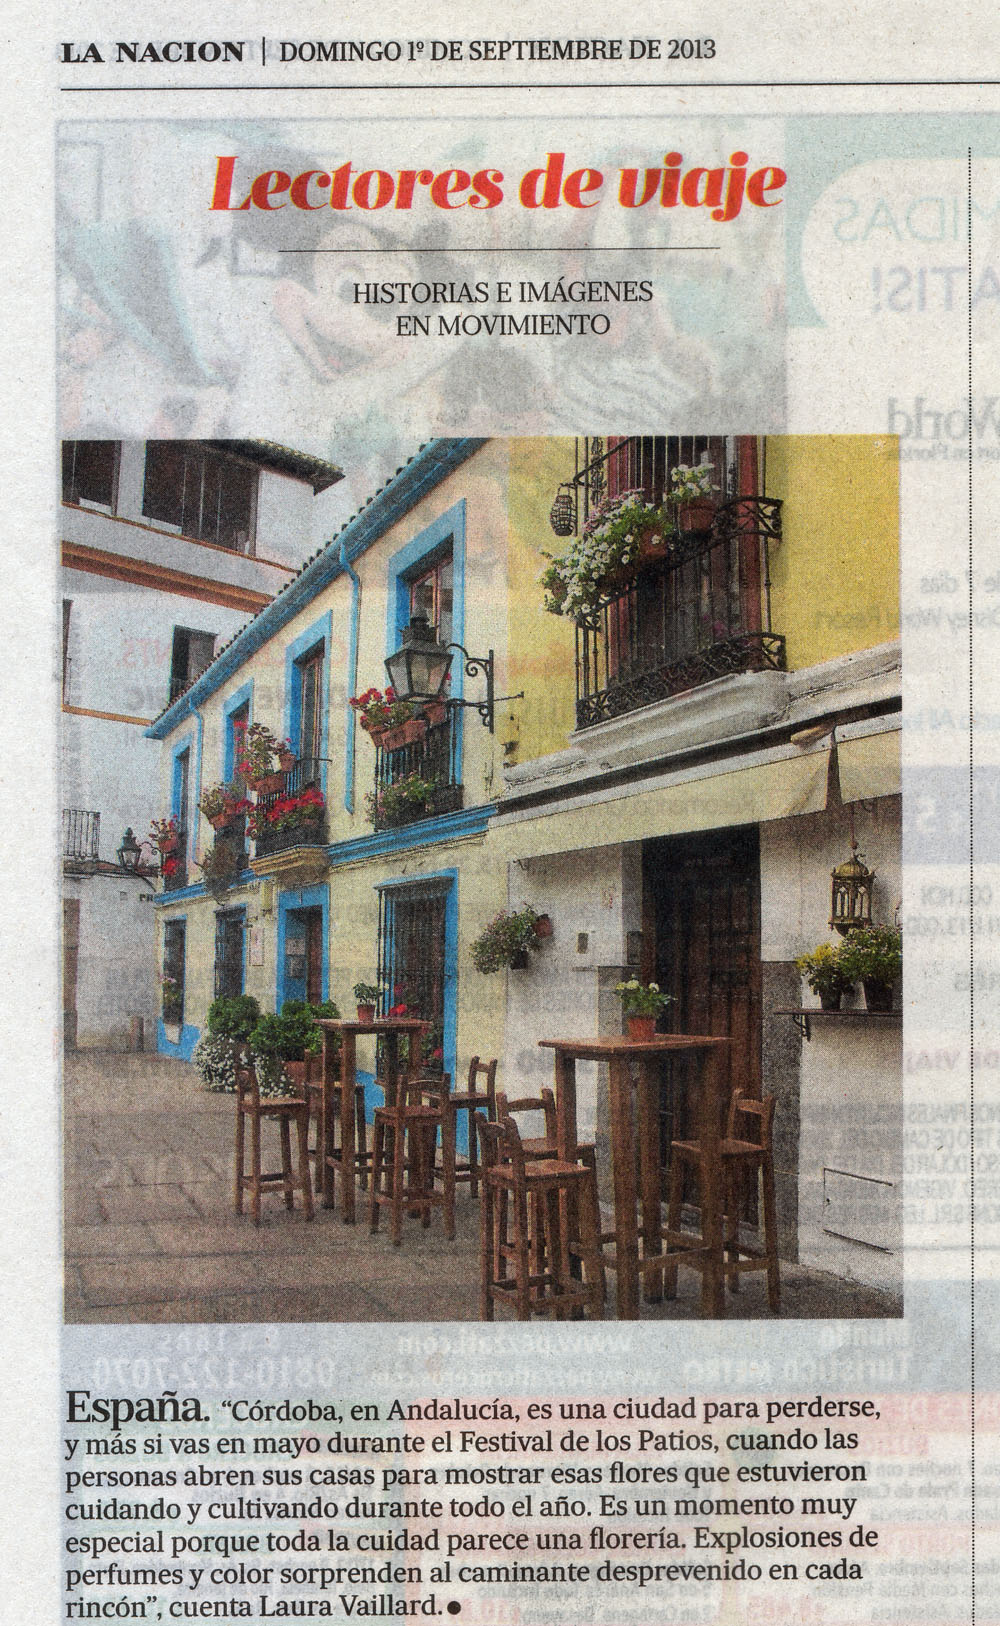 01-09-2013 - Lectores de viaje de La Nacion -Cordoba en Andalucia - small